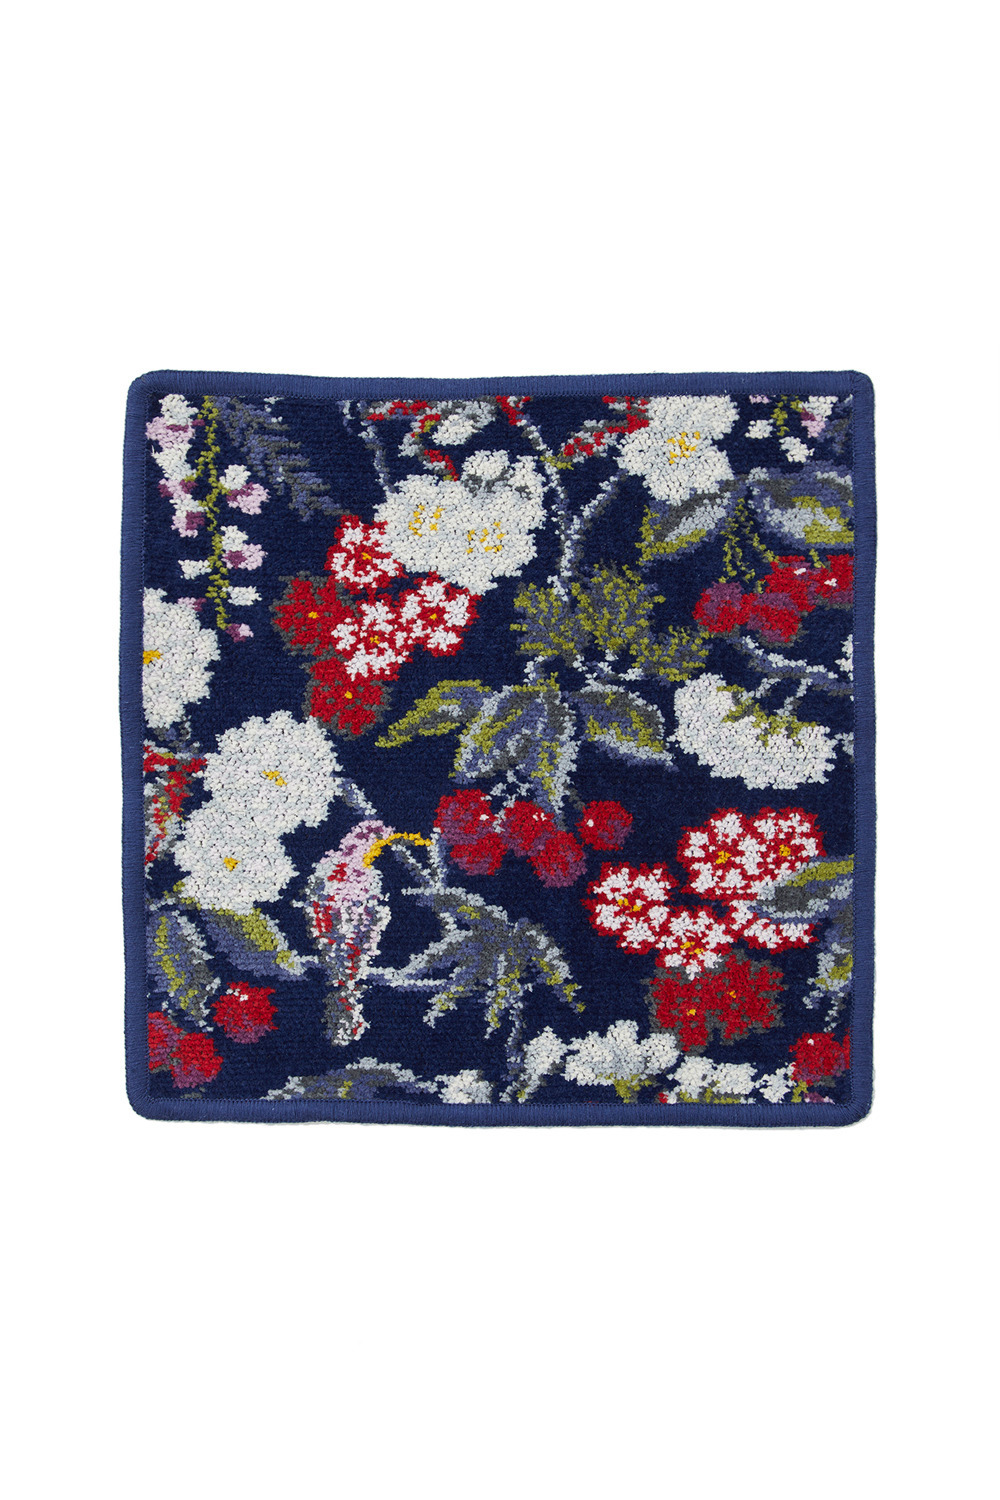 FEILER × KEITAMARUYAMA Botanical Cherry Handkerchief 詳細画像 ネイビー